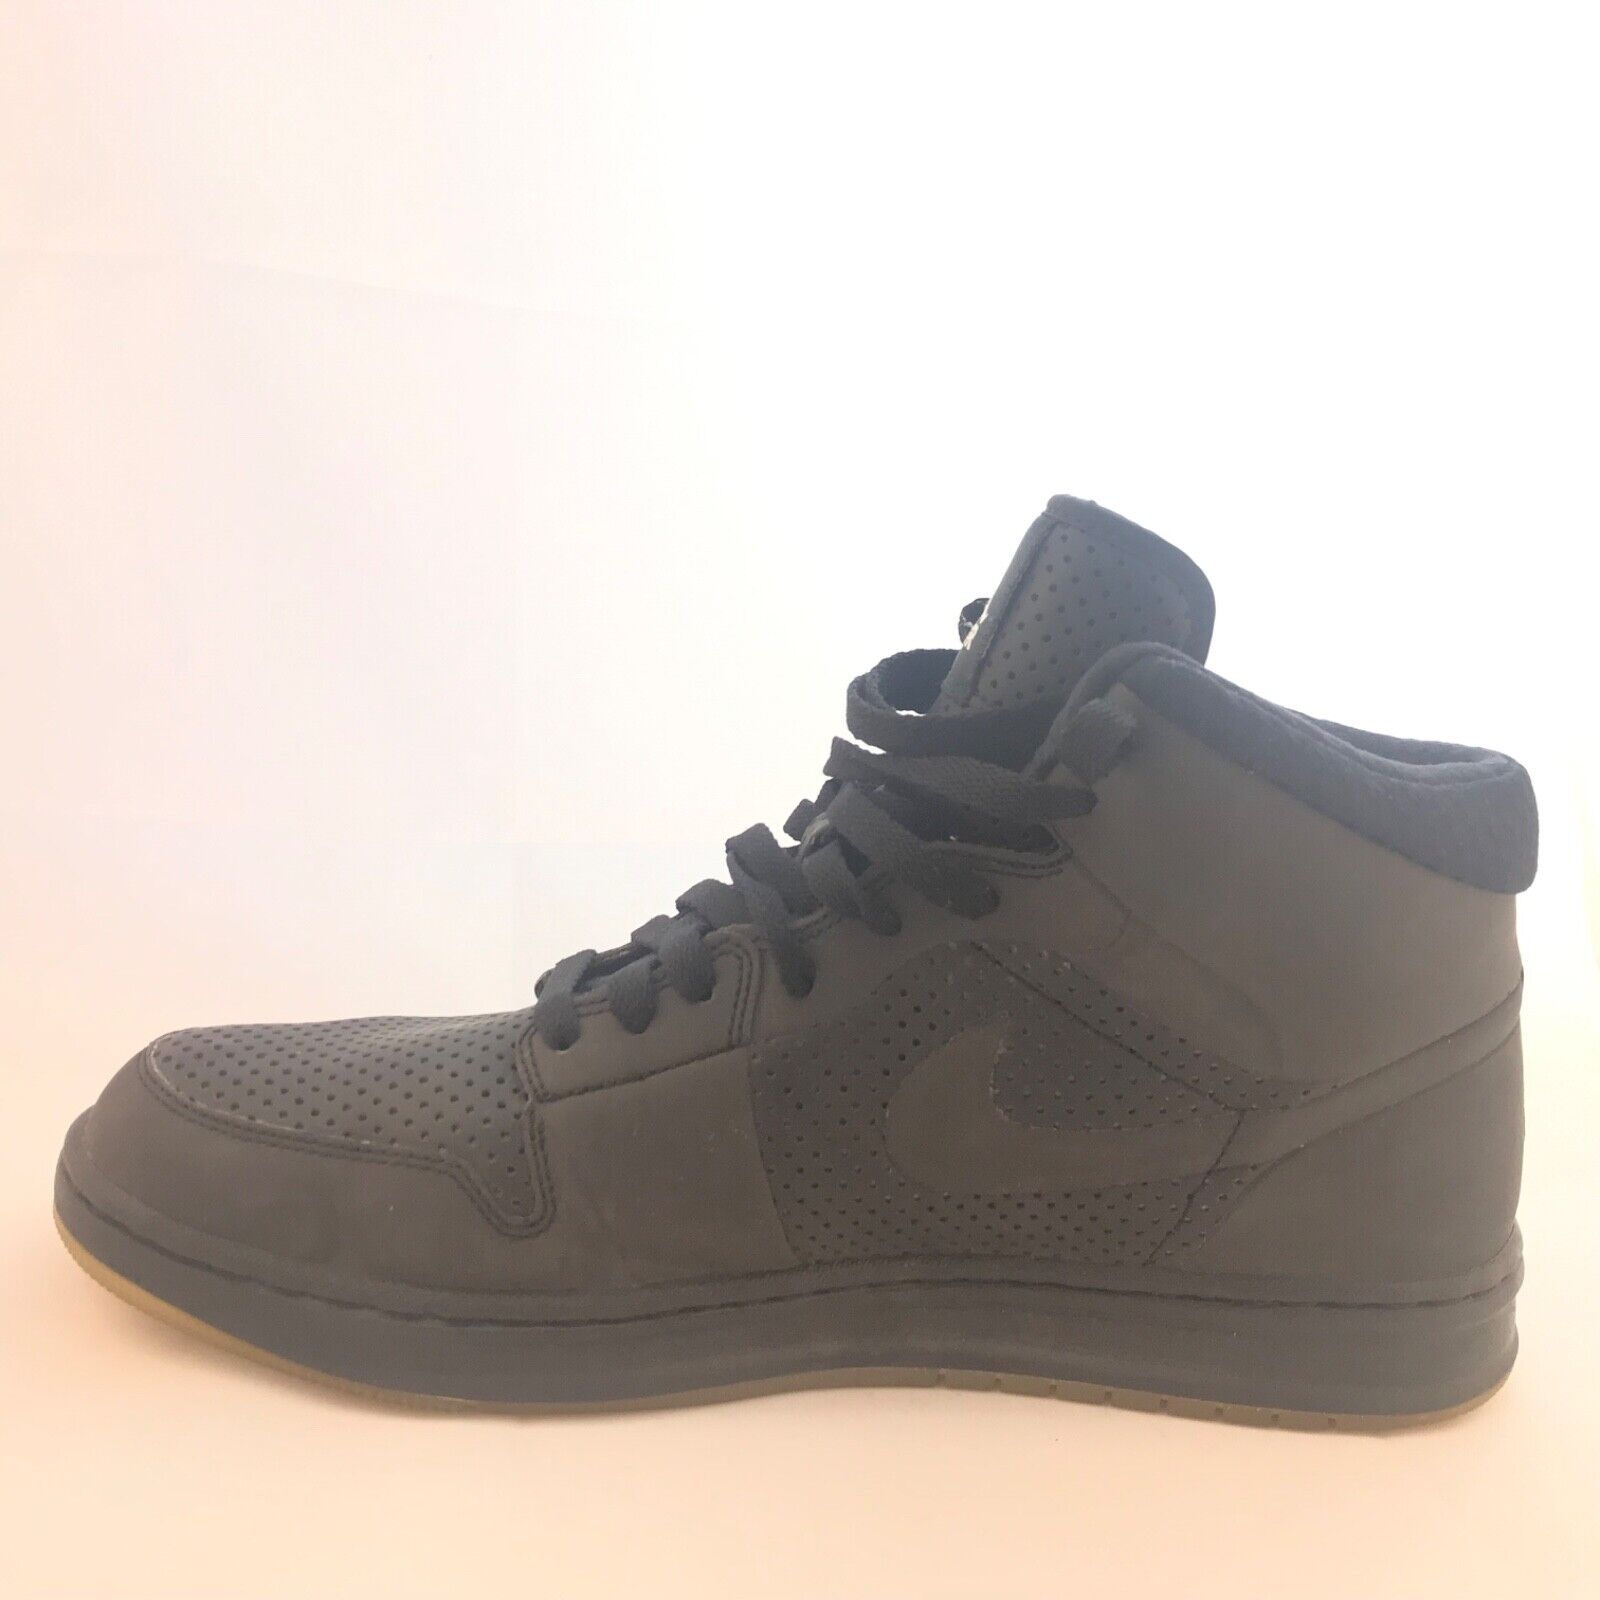 Nike 10.5 Air Jordan Black High Top Vintage Tennis Sneaker Athletic Shoe